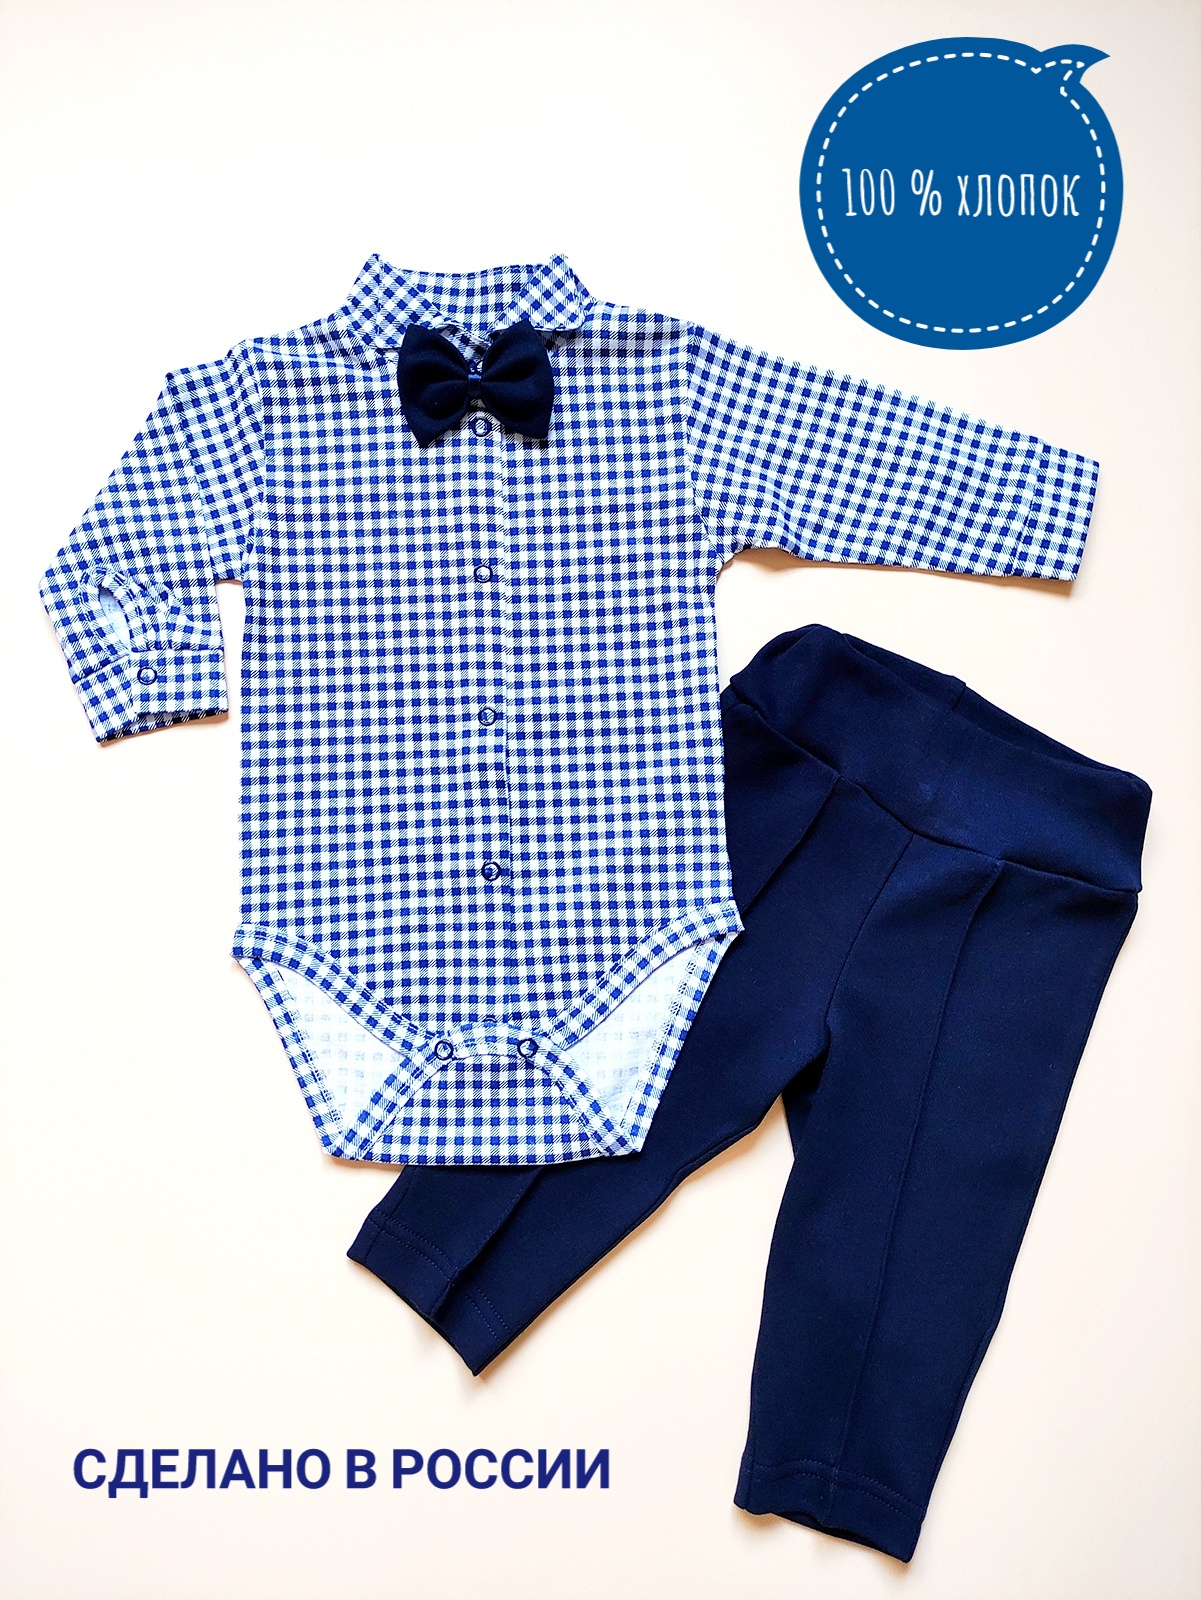 Комплект детской одежды Фабрика Алиса 4727, белый, синий, 74